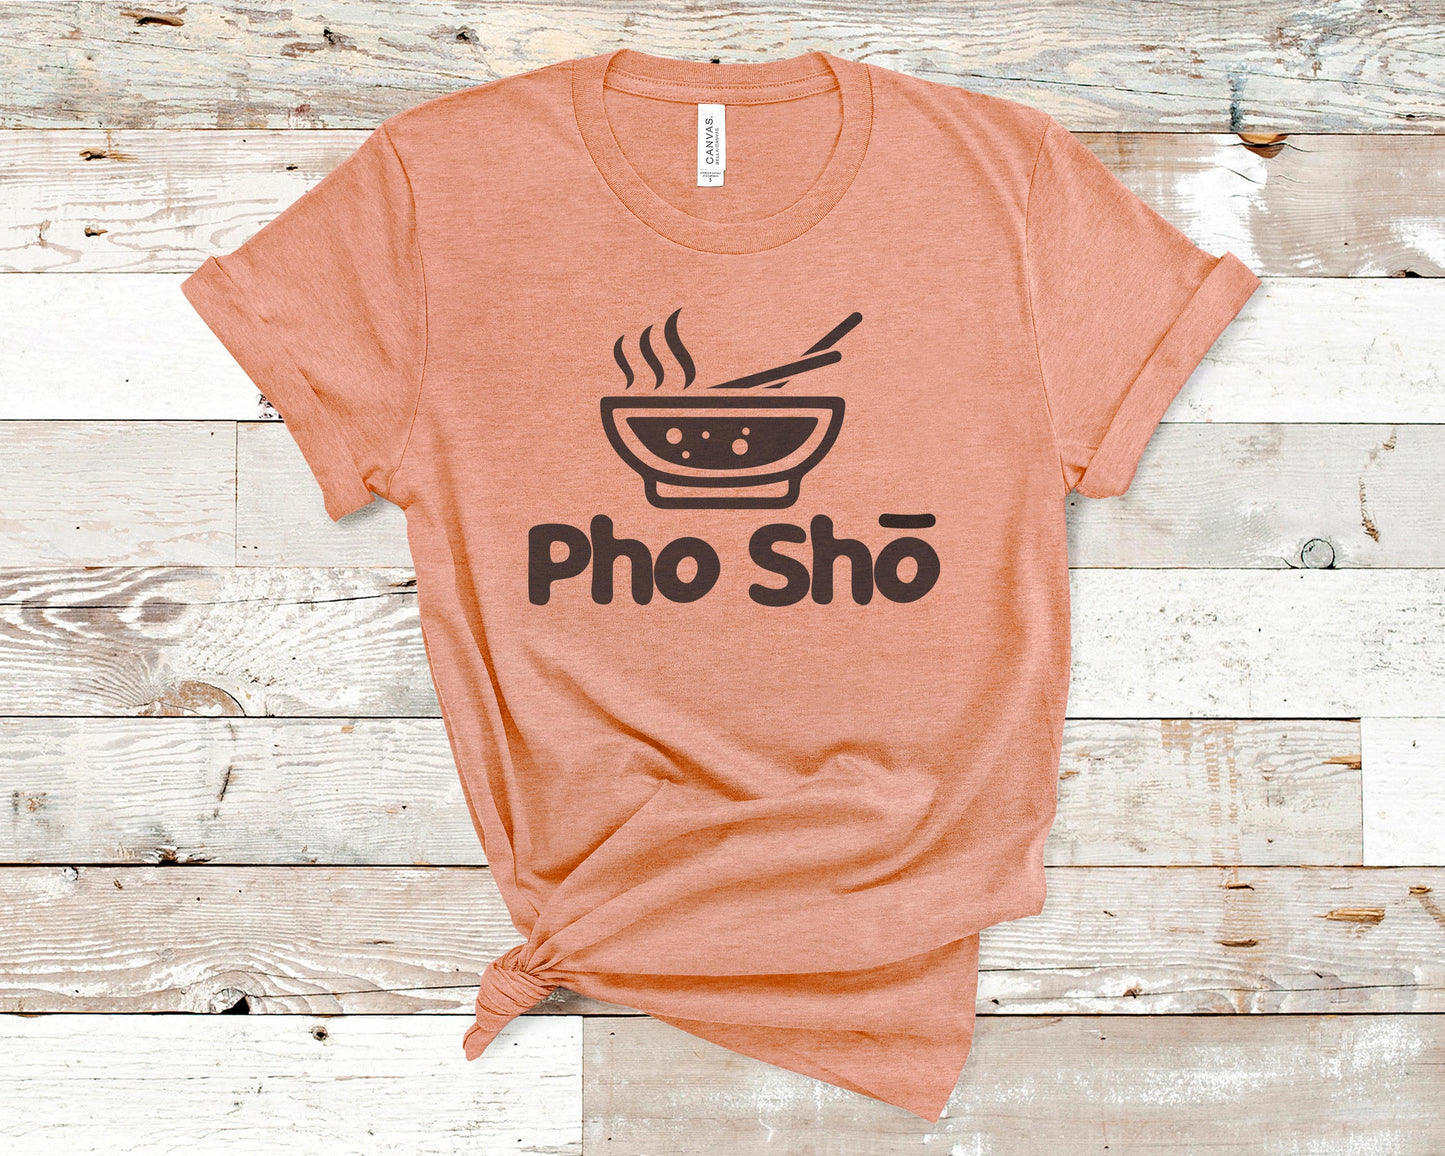 Pho Sho - Food